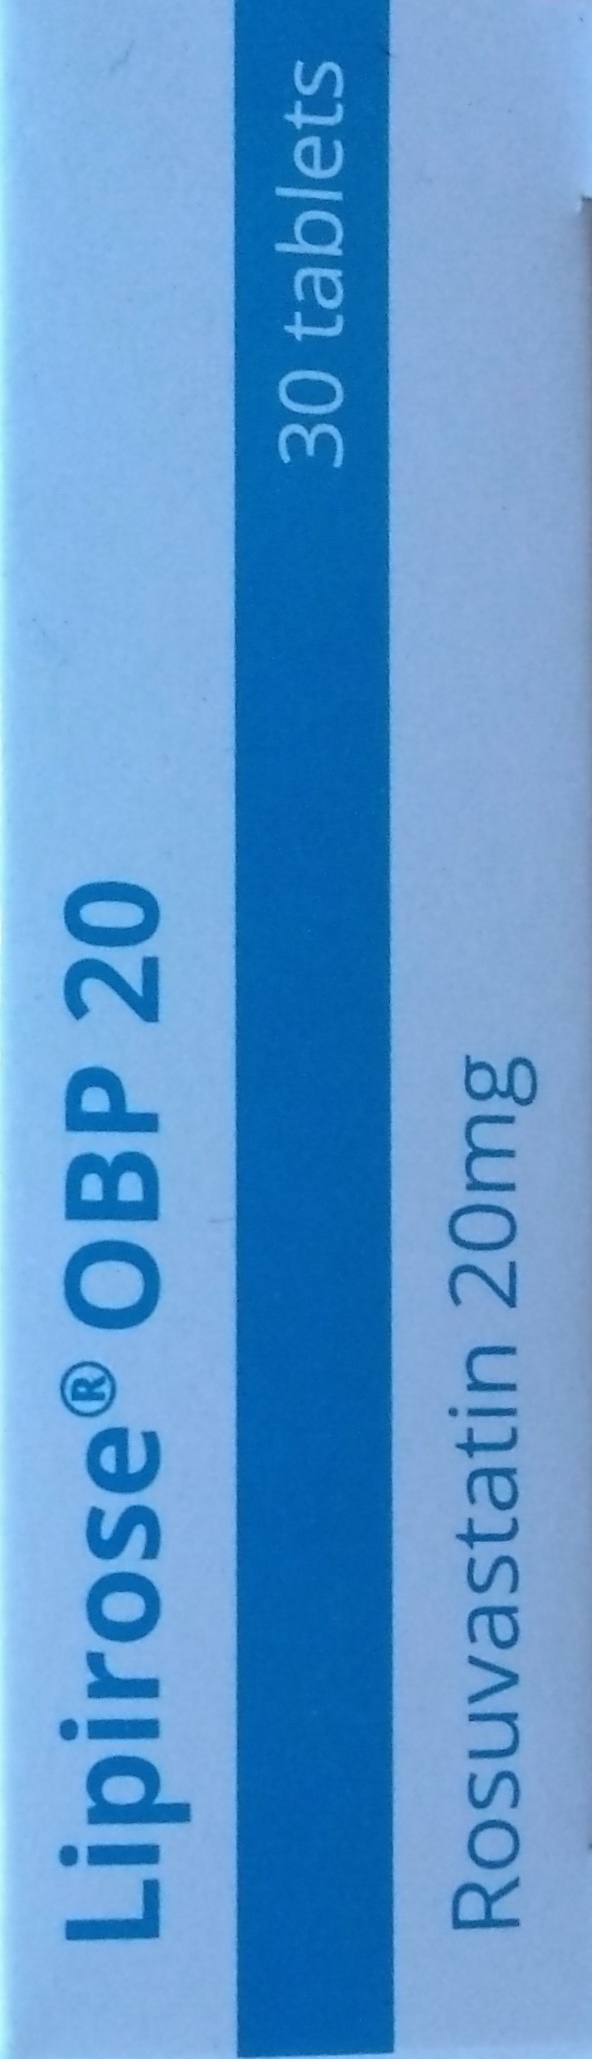 Liprose OBP 20